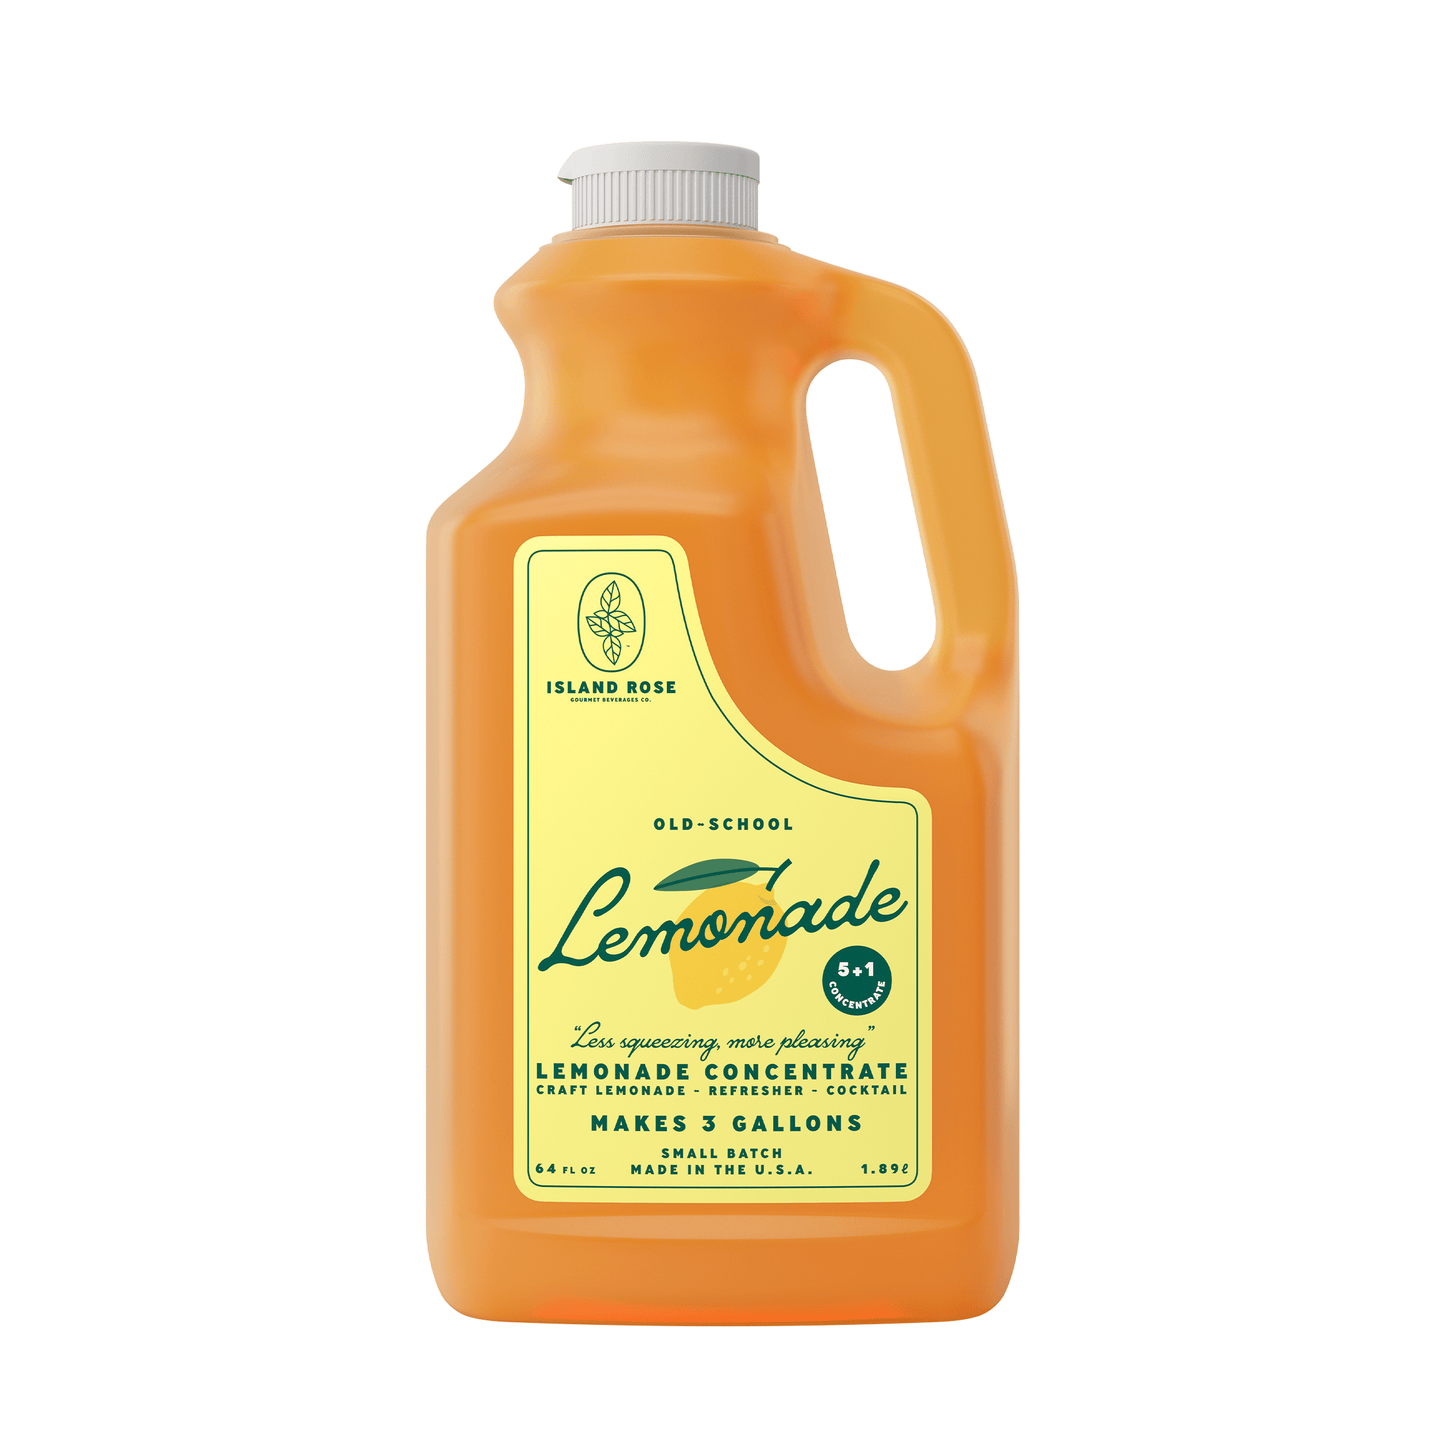 
                  
                    Island Rose 5:1 Premium Lemonade
                  
                